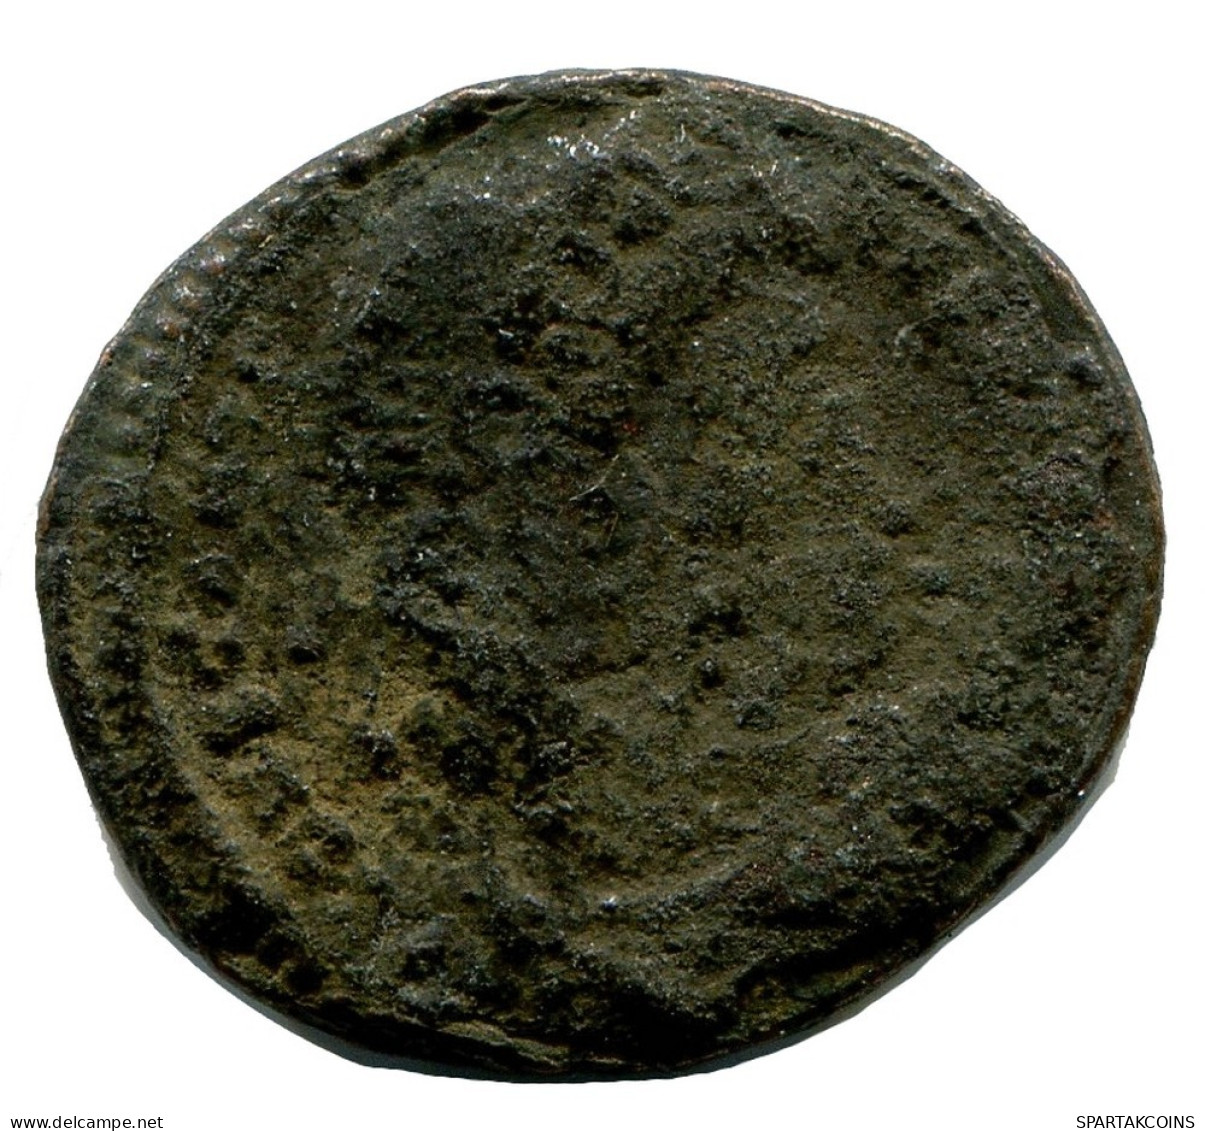 ROMAN Coin MINTED IN ALEKSANDRIA FOUND IN IHNASYAH HOARD EGYPT #ANC10180.14.U.A - L'Empire Chrétien (307 à 363)